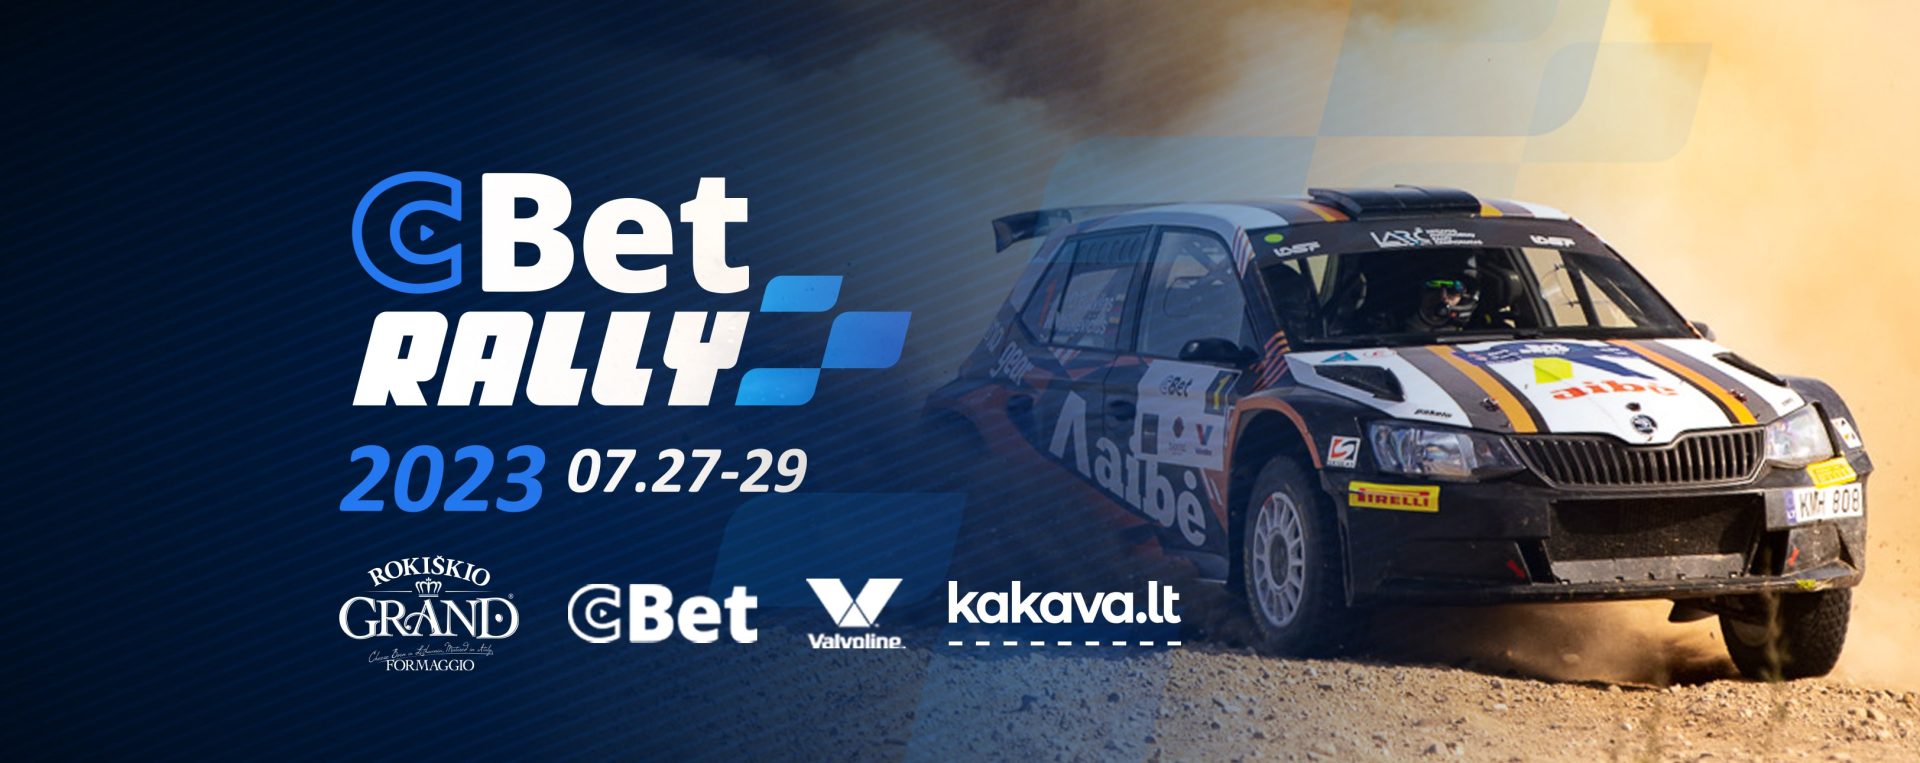 CBet Rally Rokiškis 2023